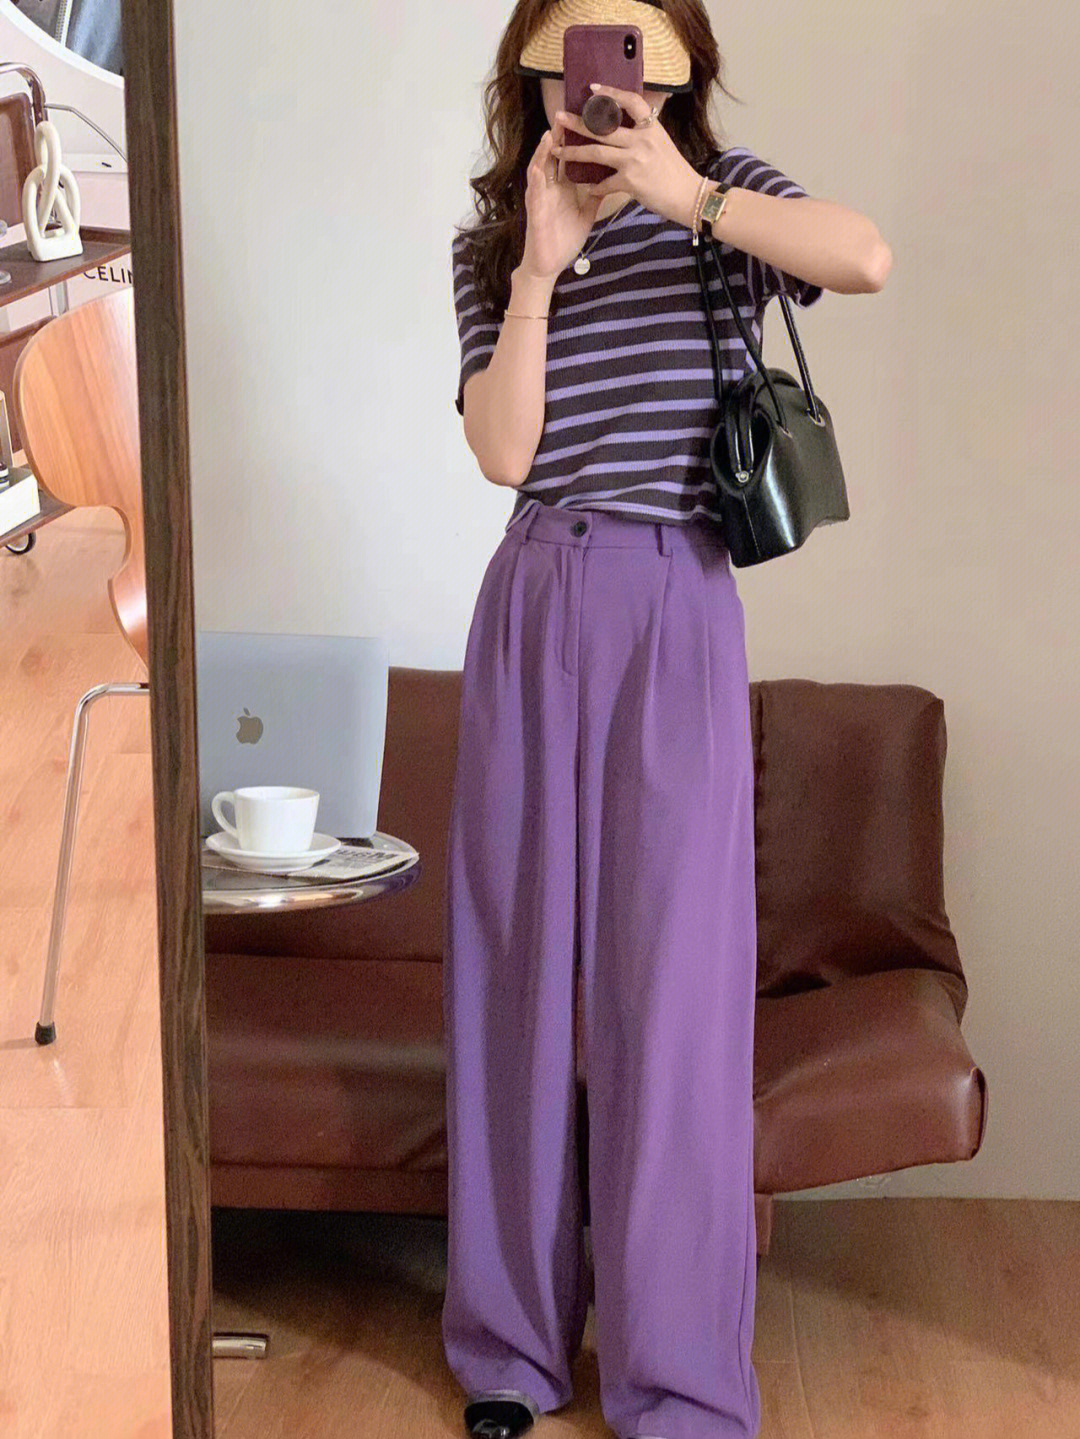 紫色条纹精梳棉上衣搭配紫色西装裤超级无敌好看!